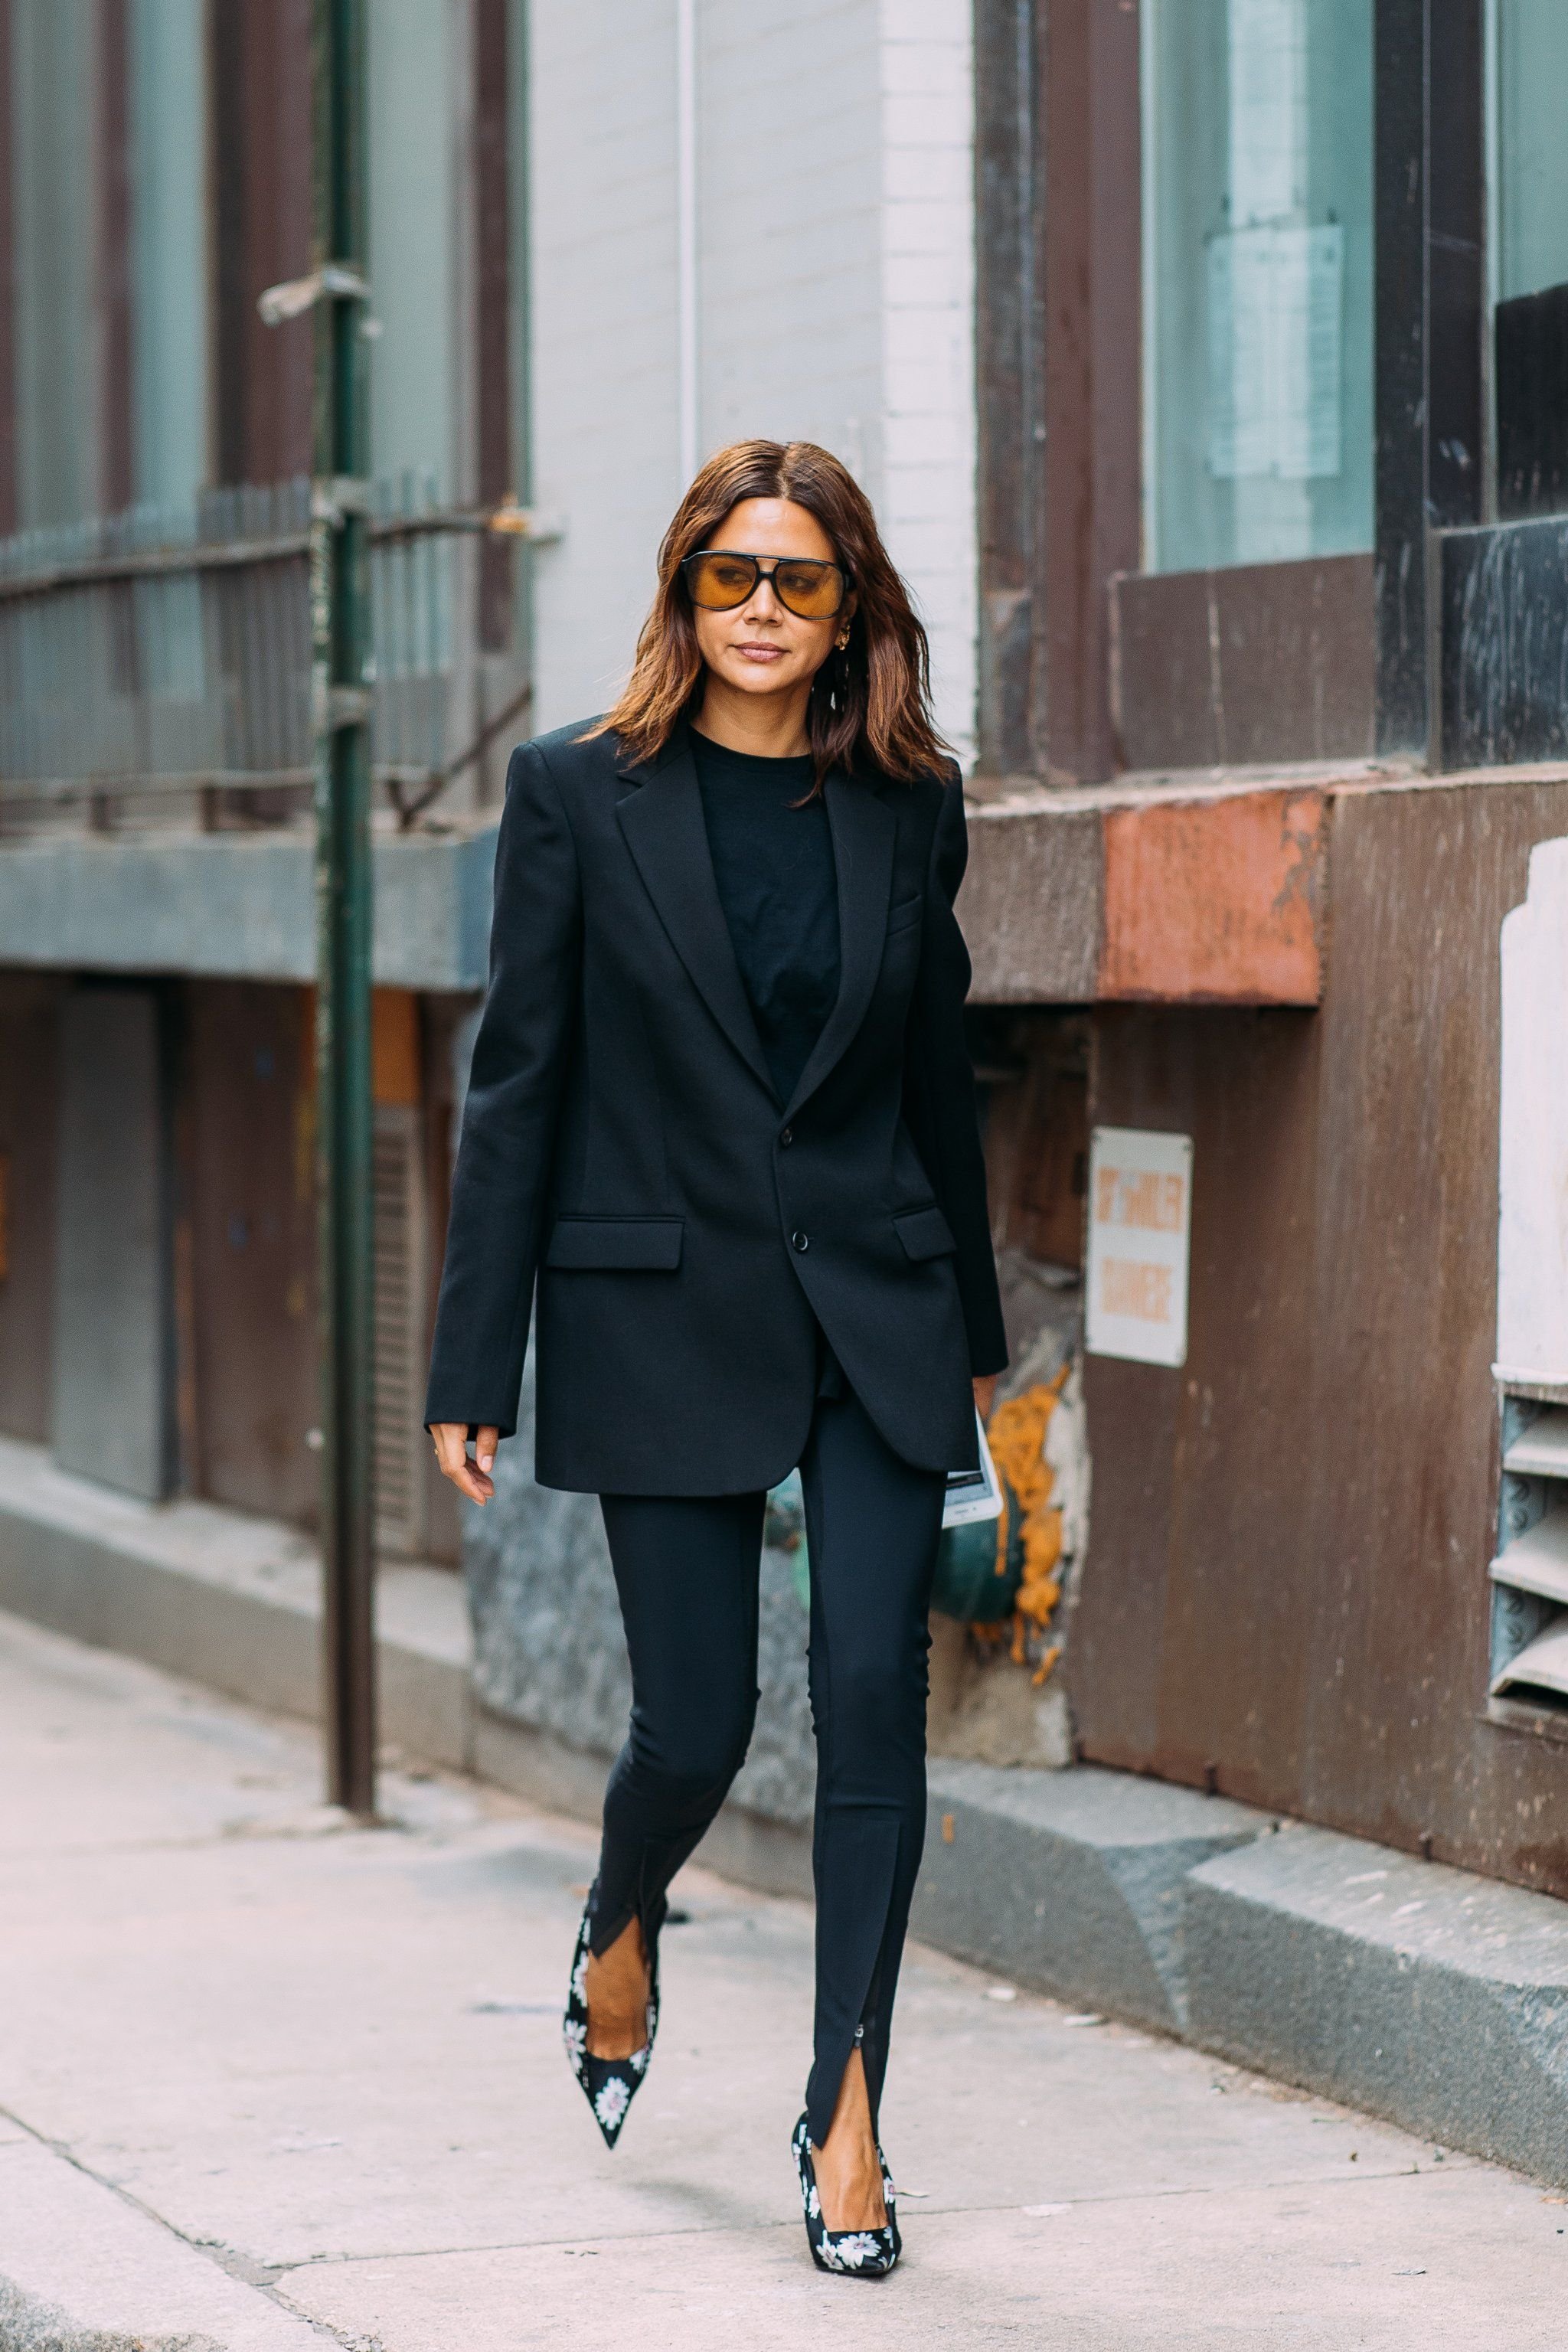 С чем носить женский чёрный пиджак: модели, материалы, критерии выбора